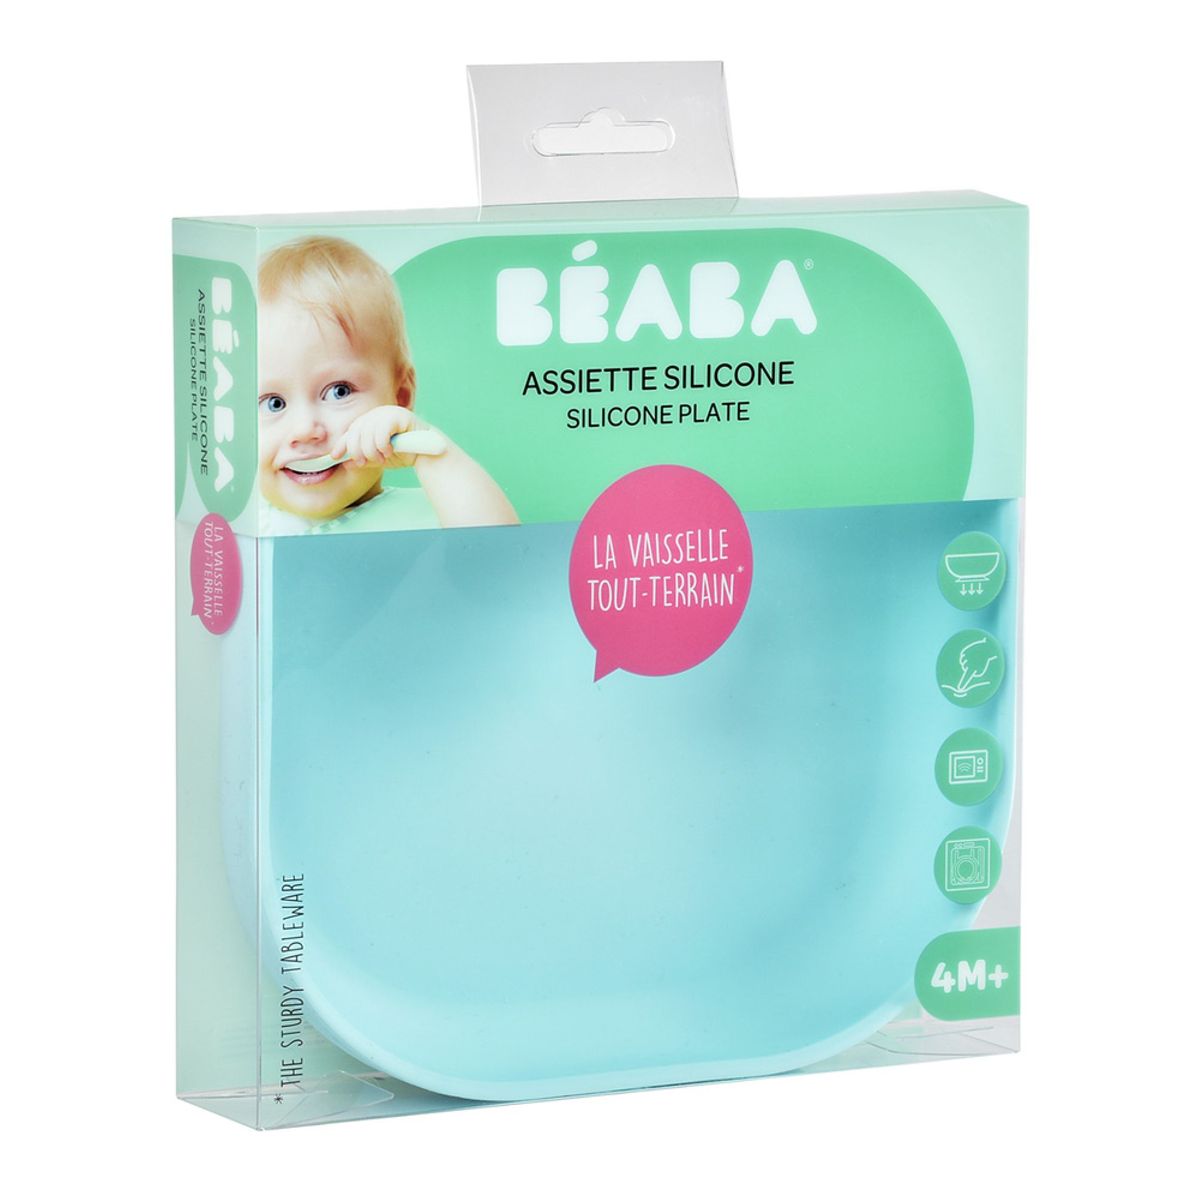 BEABA, Verre Ventouse pour Enfant, 100% silicone, matière douce et